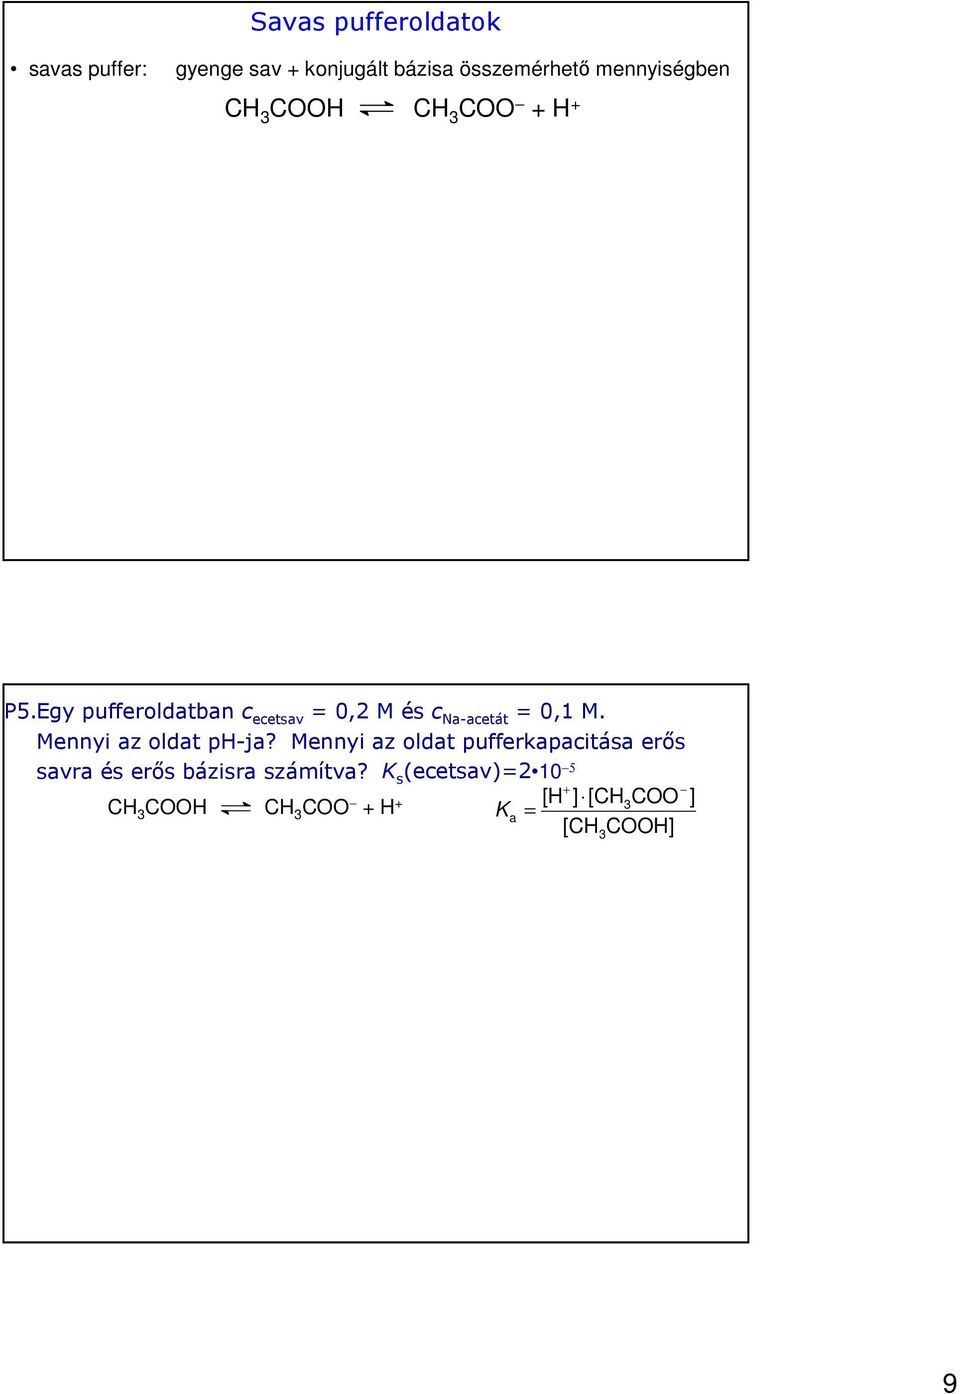 Egy pufferoldatbanc ecetsav = 0,2 M és c Na-acetát = 0,1 M. Mennyi az oldat ph-ja?